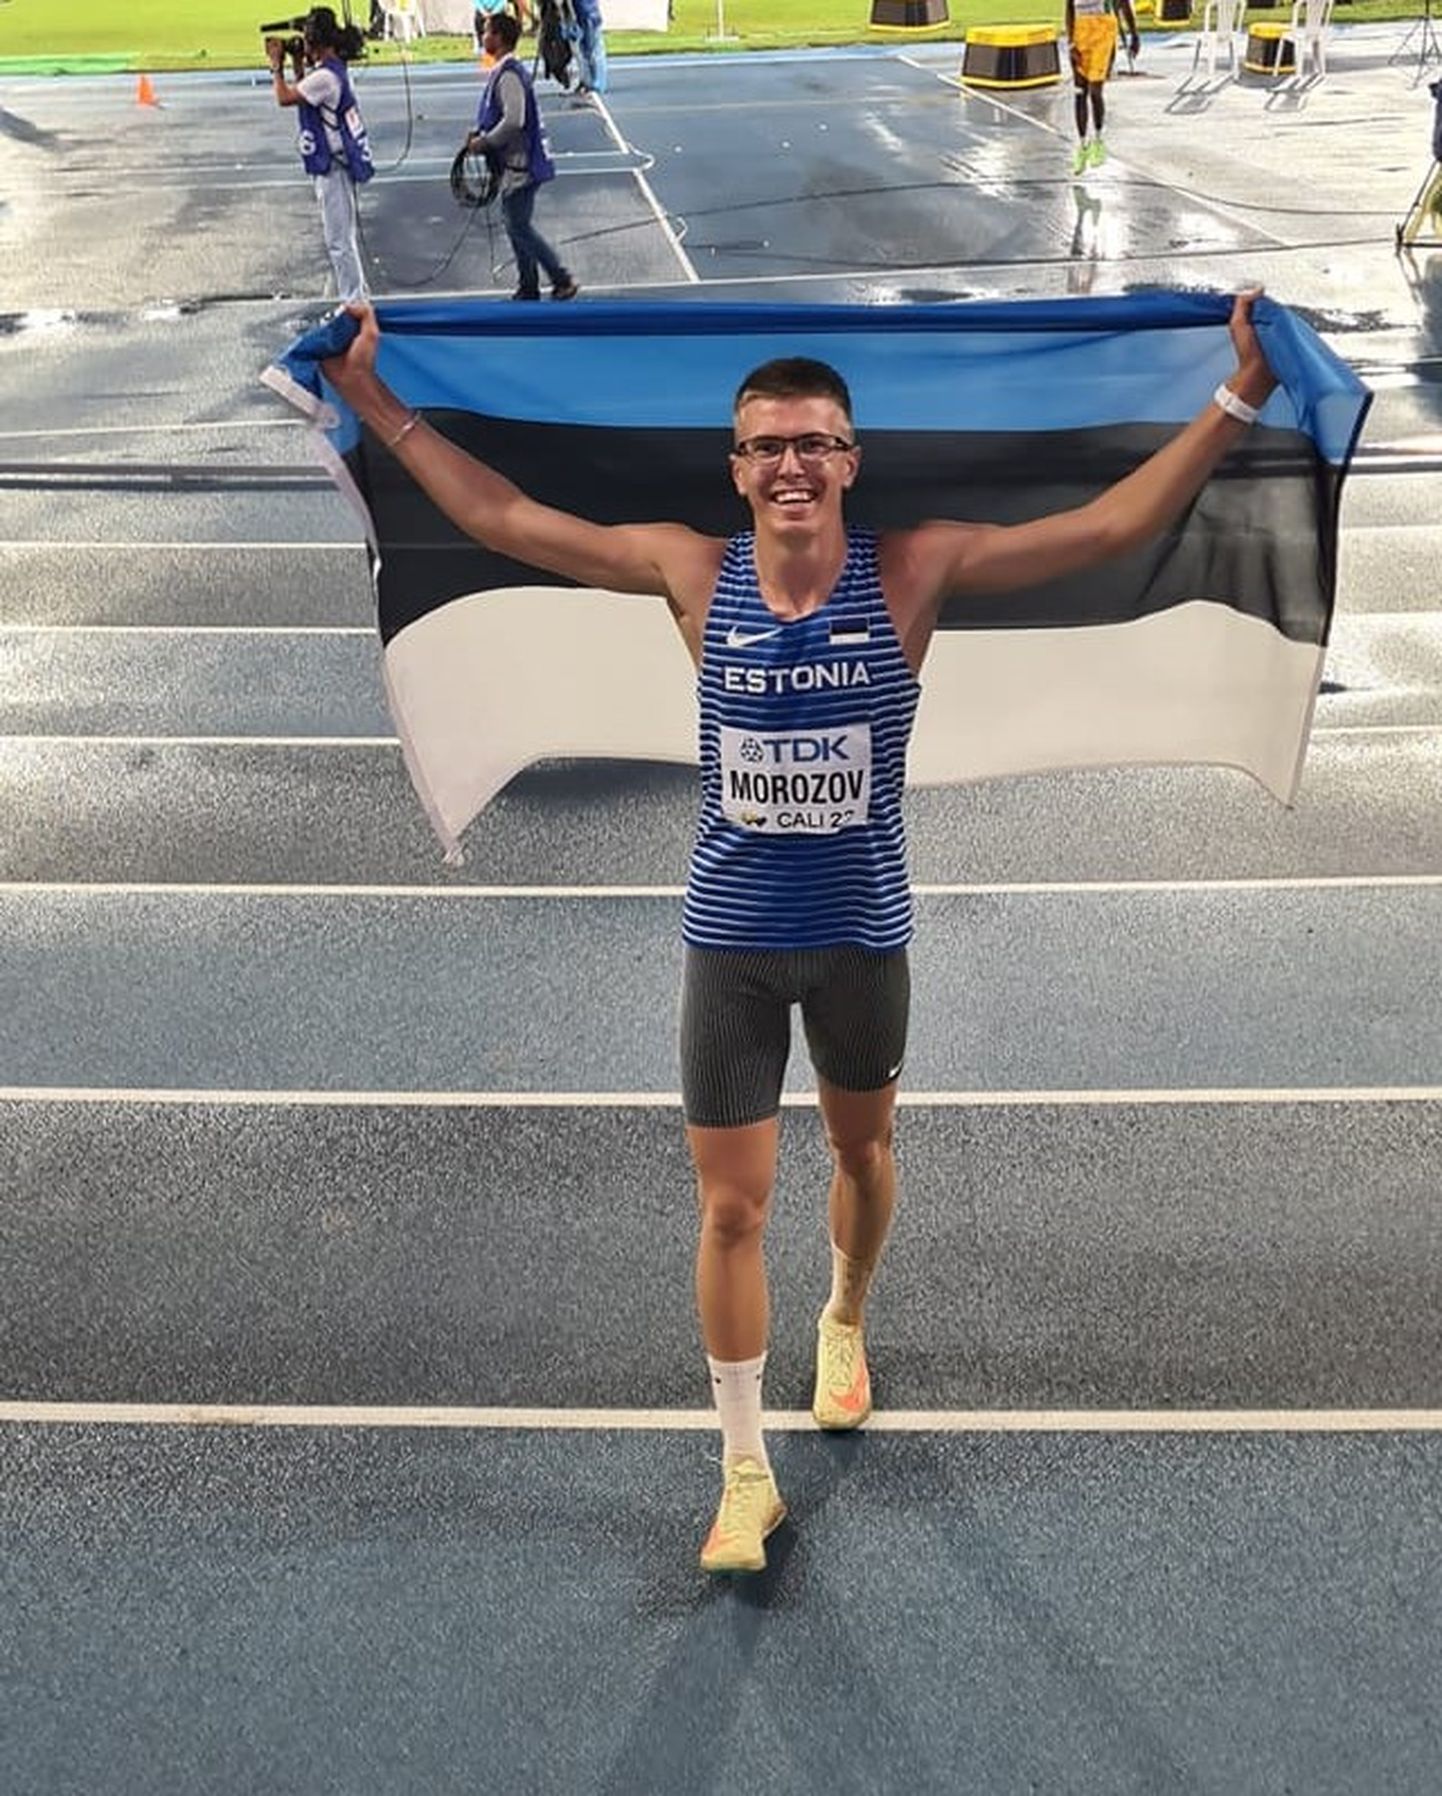 Viktor Morozov juubeldamas Eesti lipuga tänavu augusti alguses Kolumbia linna Cali staadionil, kus ta võitis juunioride maailmameistrivõistlustel kolmikhüppes pronksmedali.